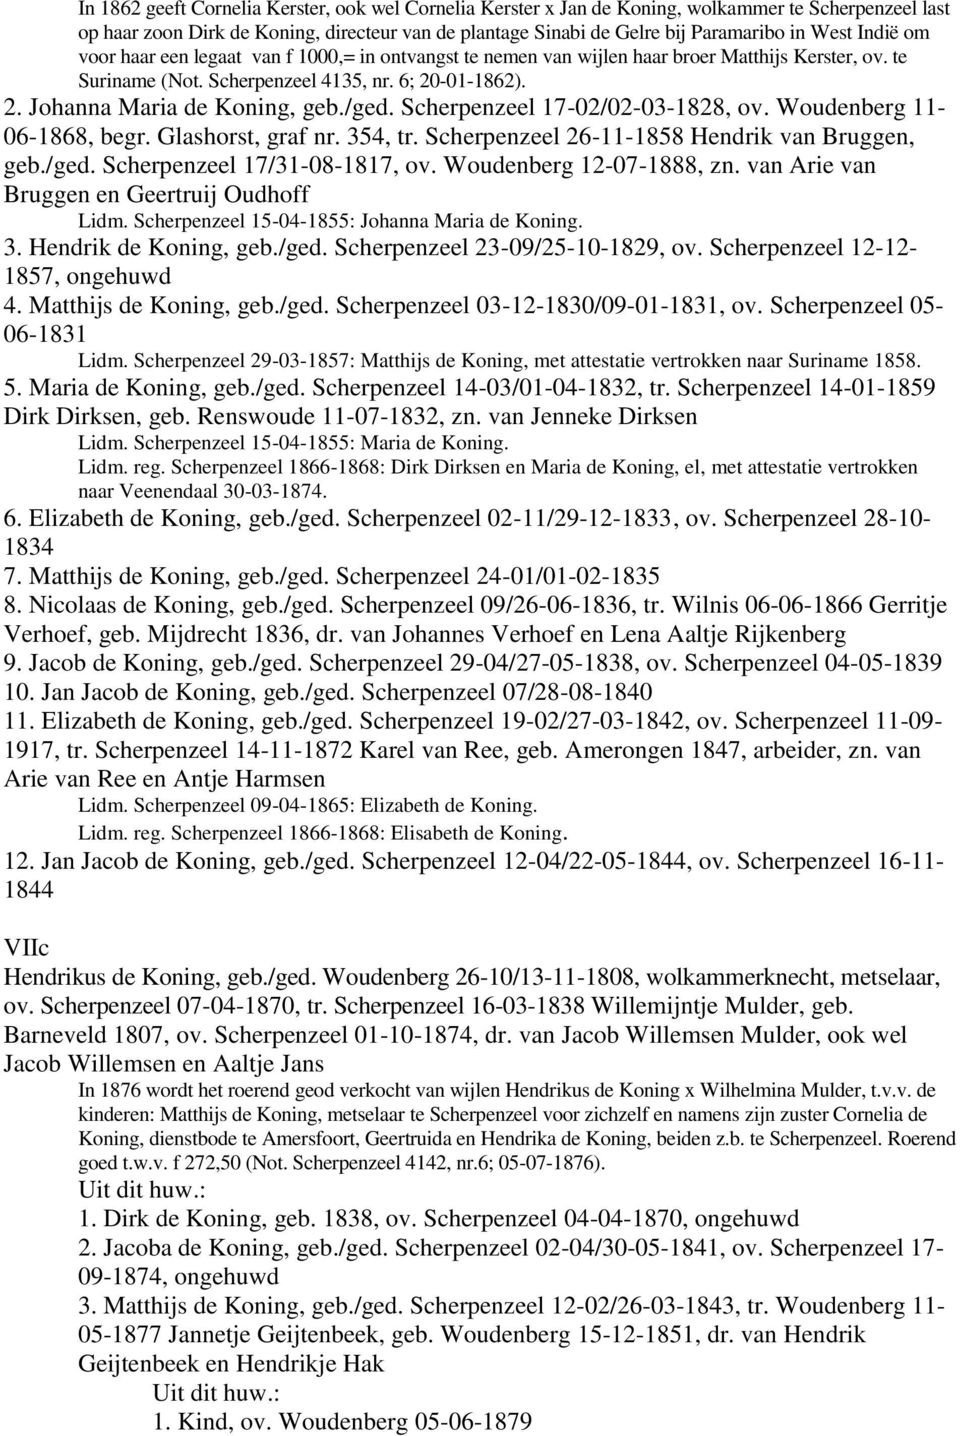 /ged. Scherpenzeel 17-02/02-03-1828, ov. Woudenberg 11-06-1868, begr. Glashorst, graf nr. 354, tr. Scherpenzeel 26-11-1858 Hendrik van Bruggen, geb./ged. Scherpenzeel 17/31-08-1817, ov.